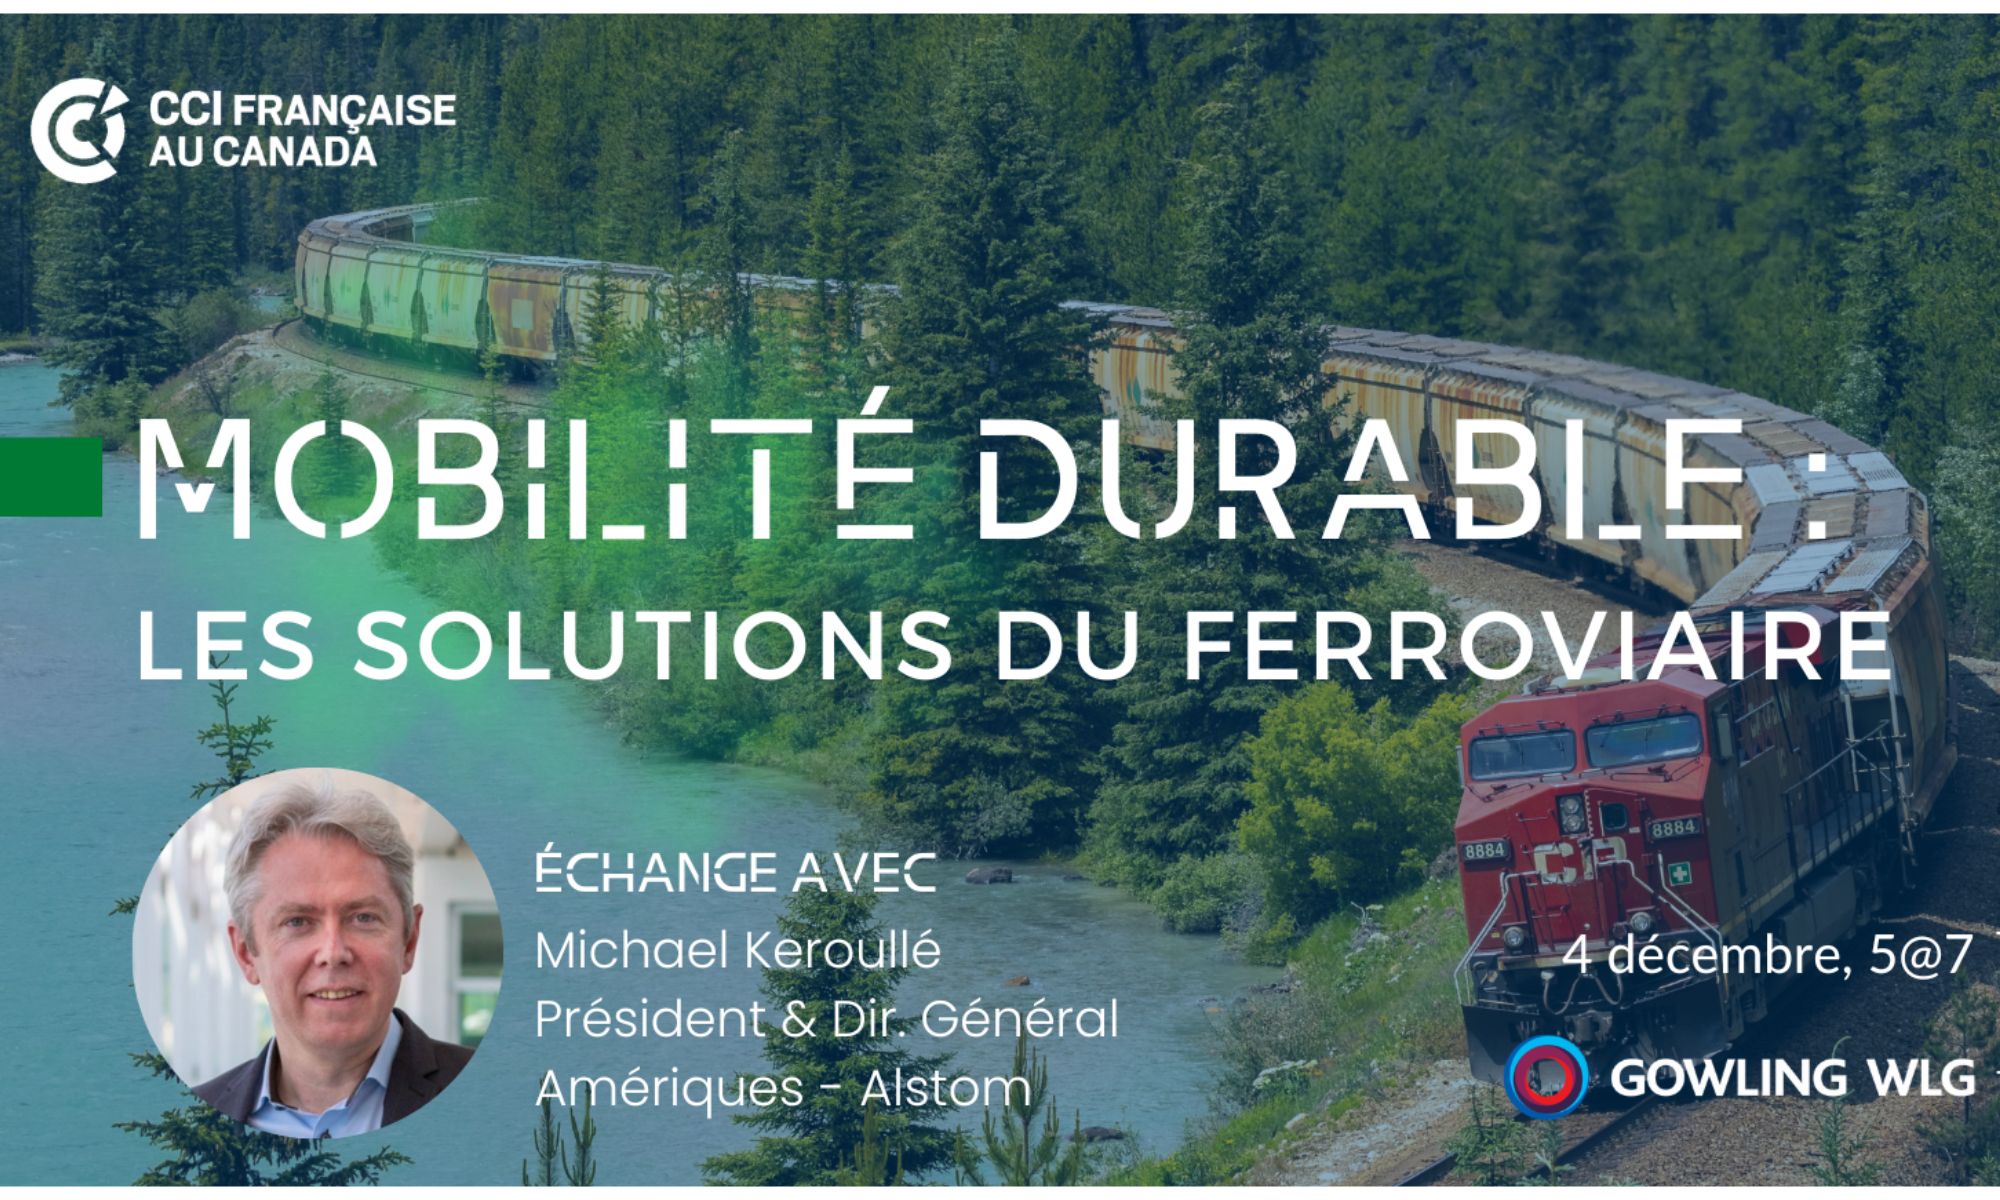 Un évènement CCI France-Canada sur le système ferroviaire et la mobilité durable